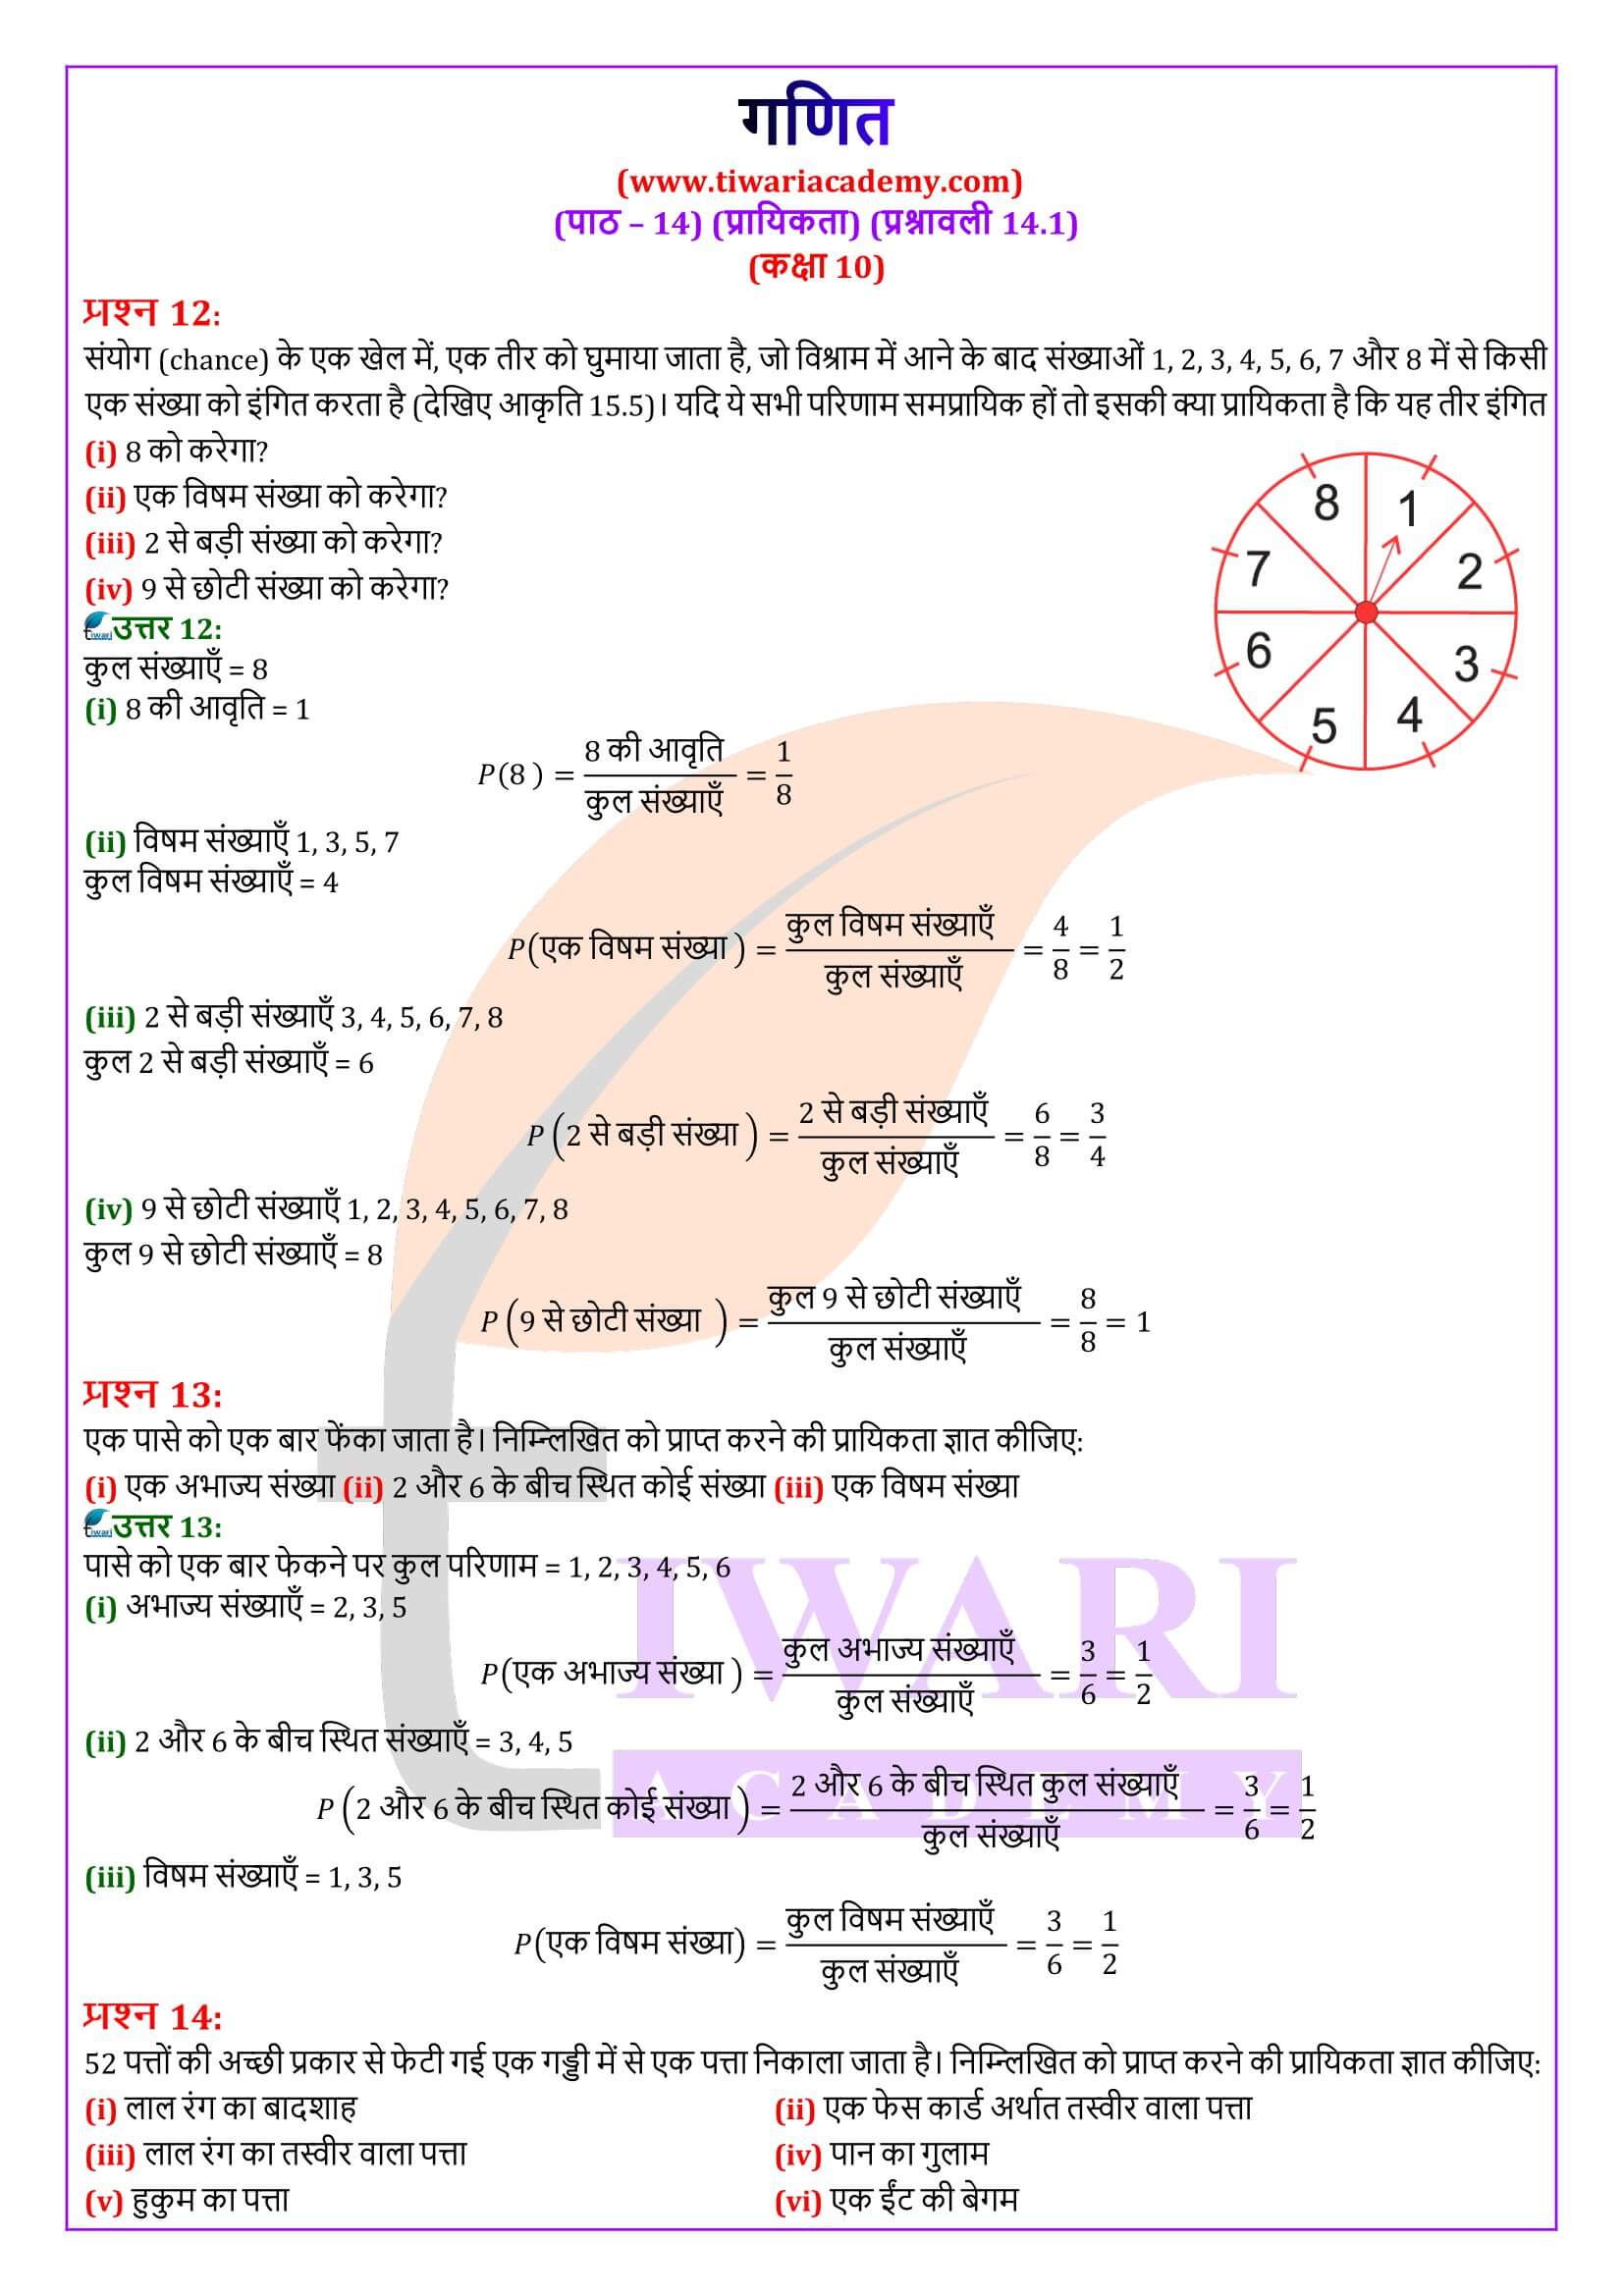 कक्षा 10 गणित प्रश्नावली 14.1 के हल हिंदी में